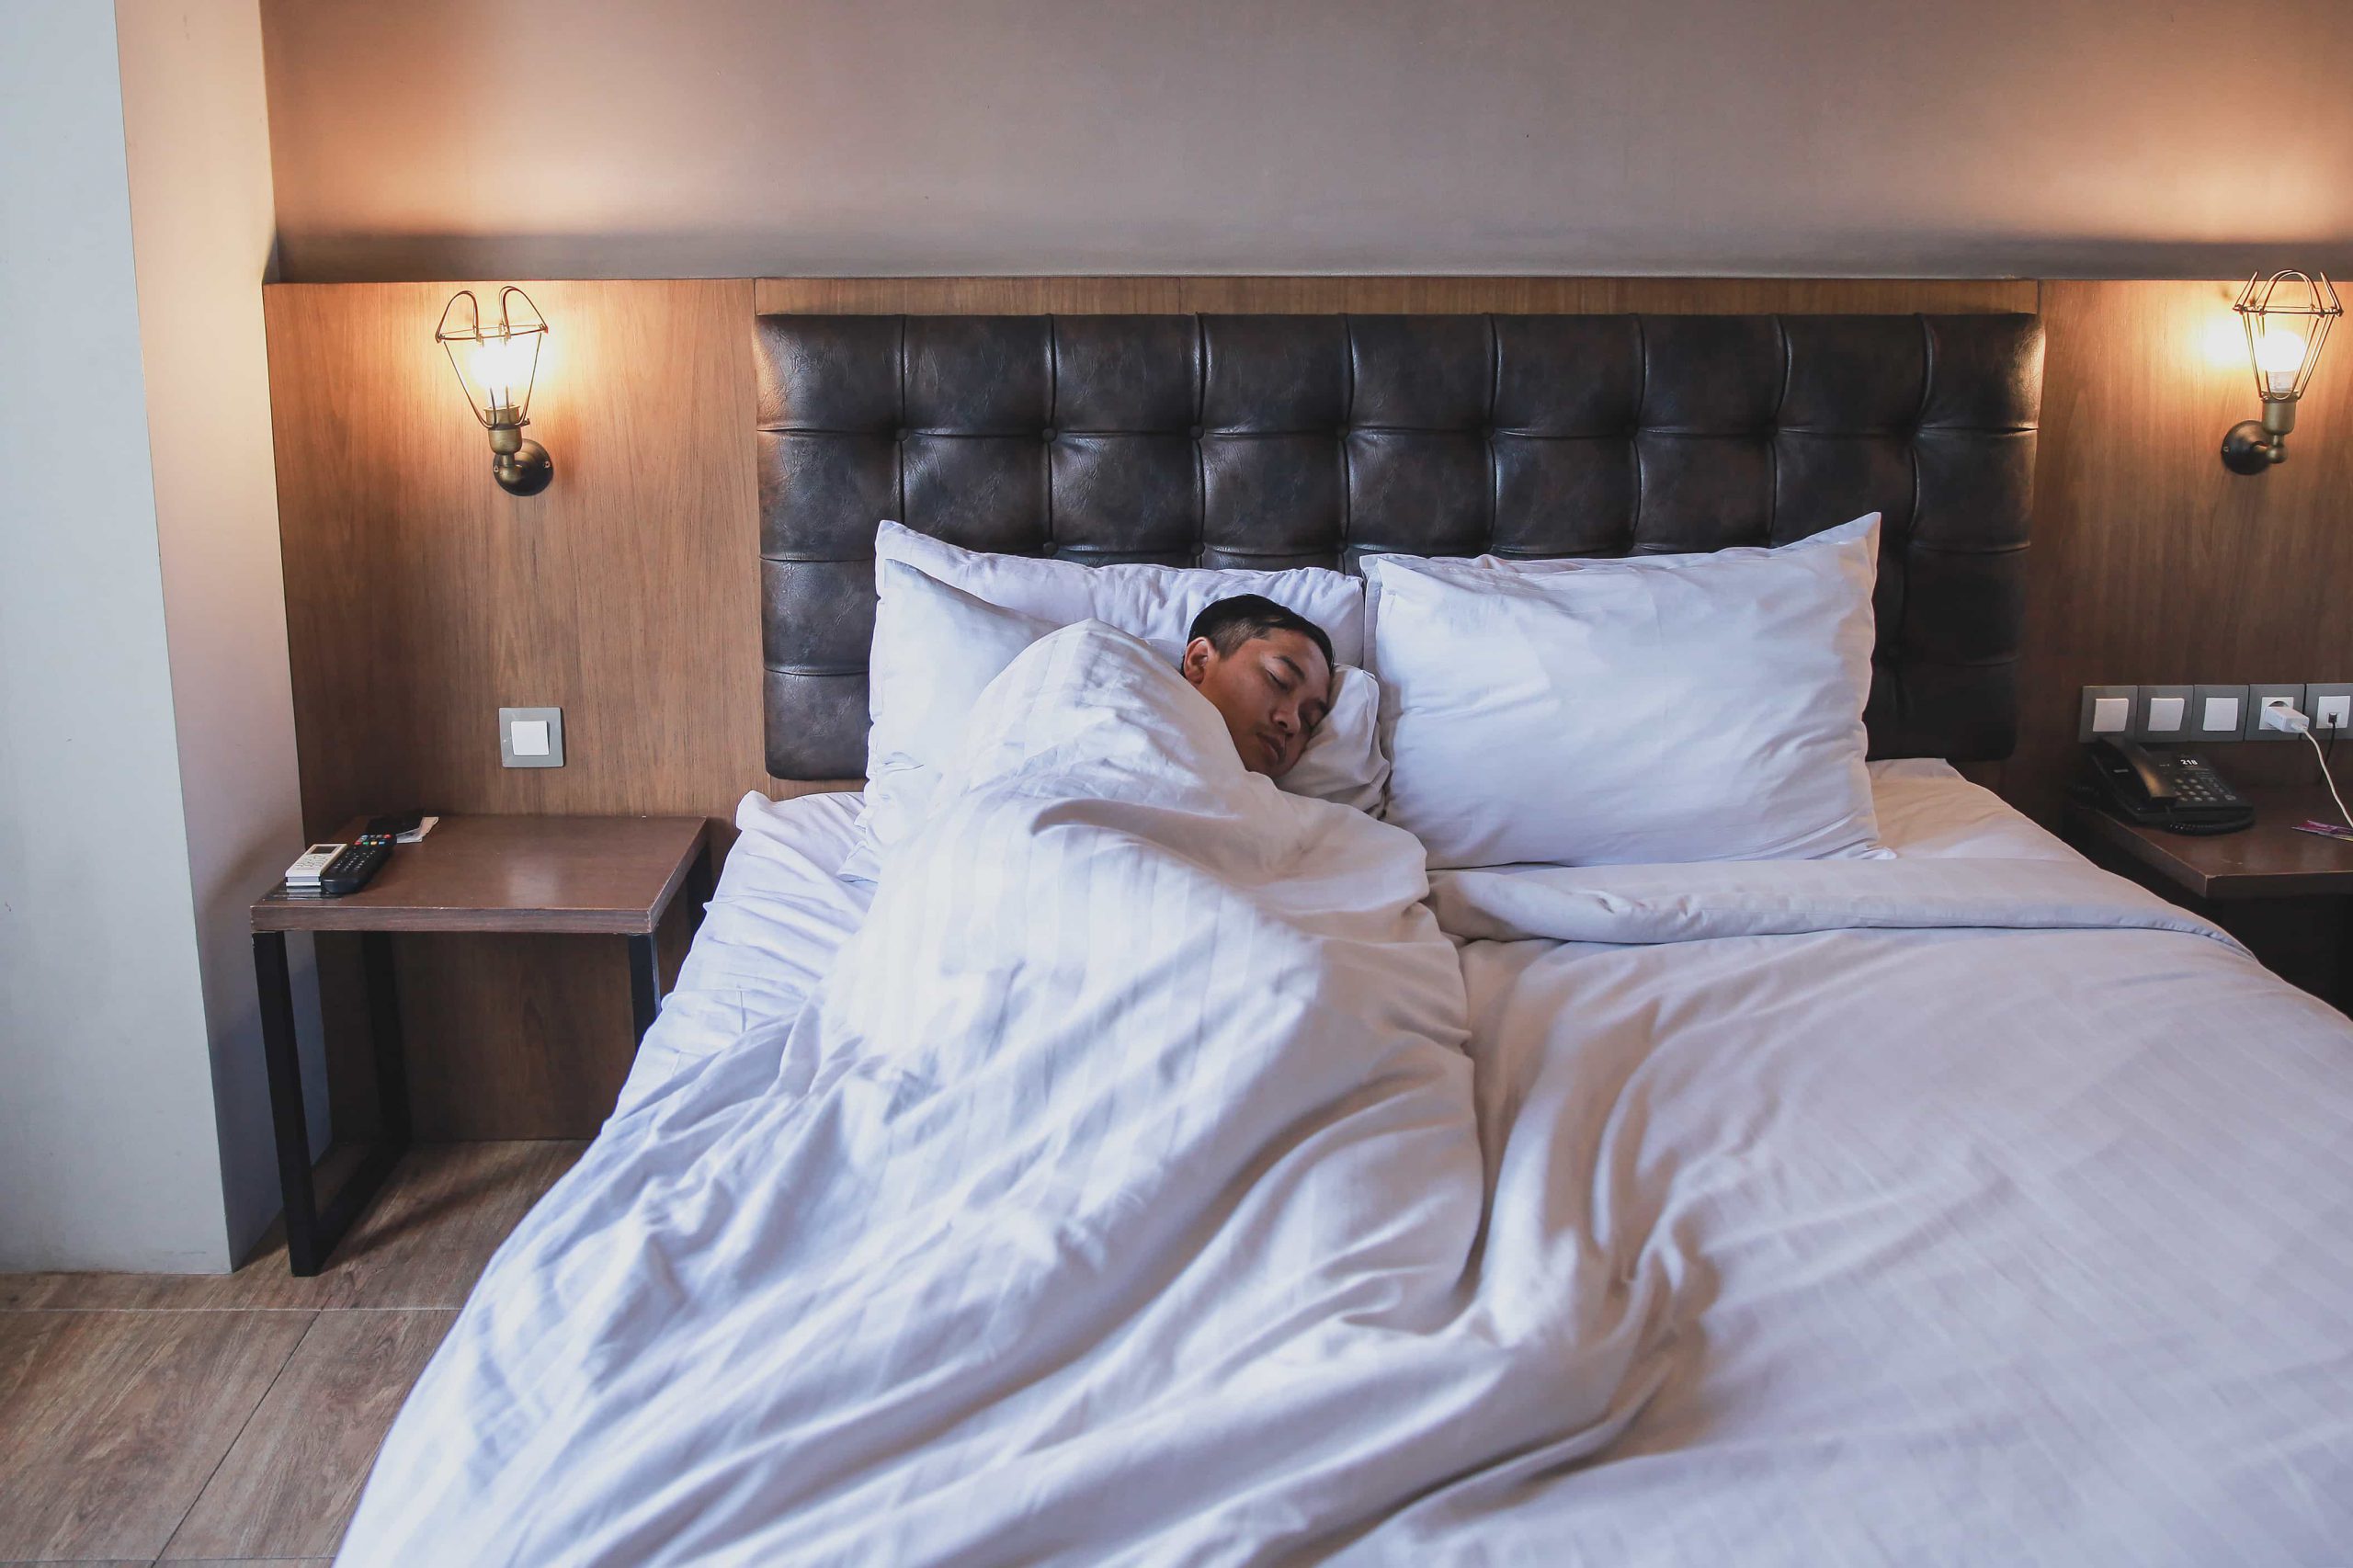 Mężczyzna śpiący w łóżku przykryty pościelą.